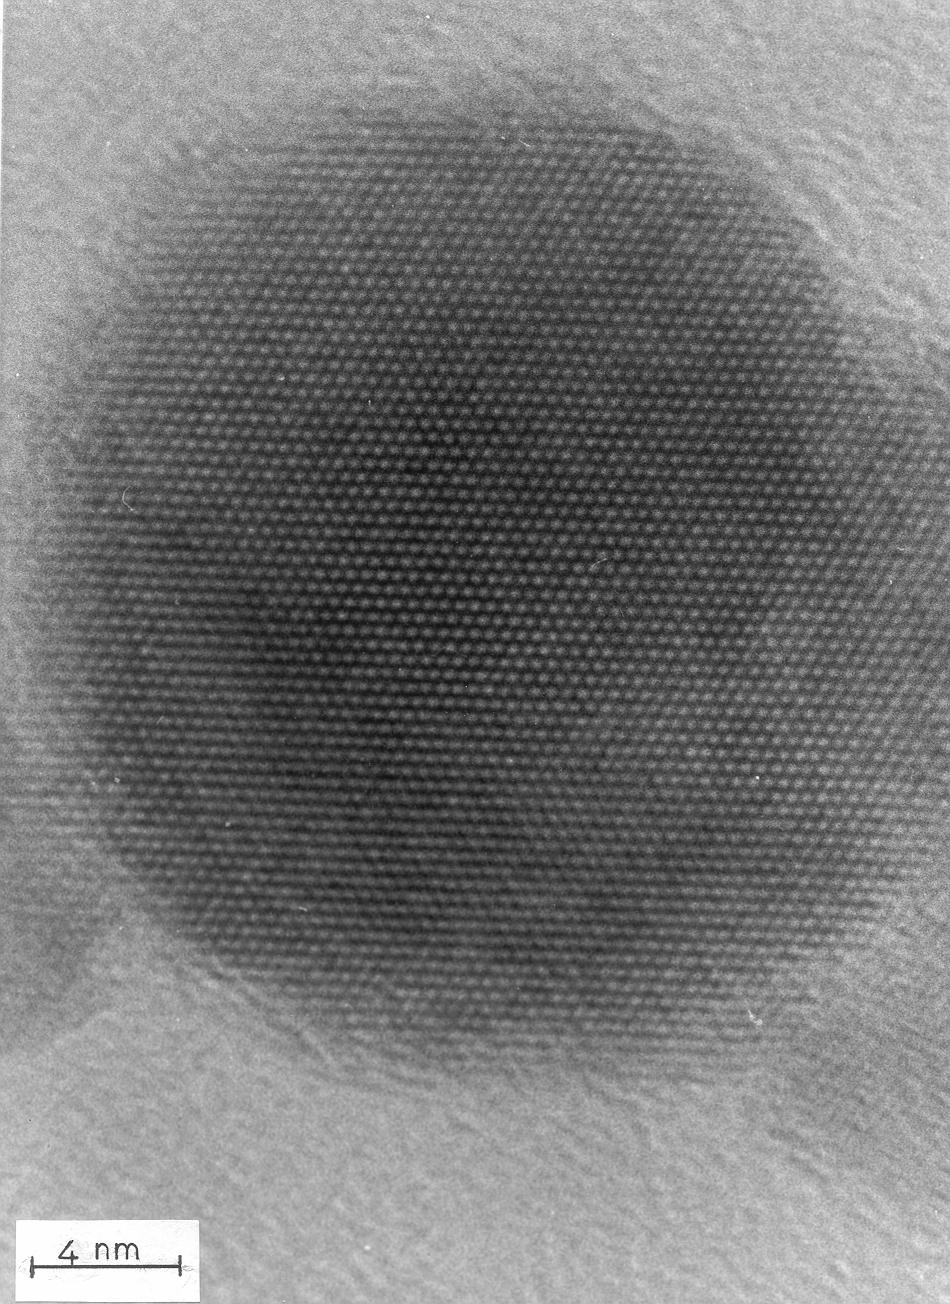 Imagen del ata resolución de una nanopartícula de CdS